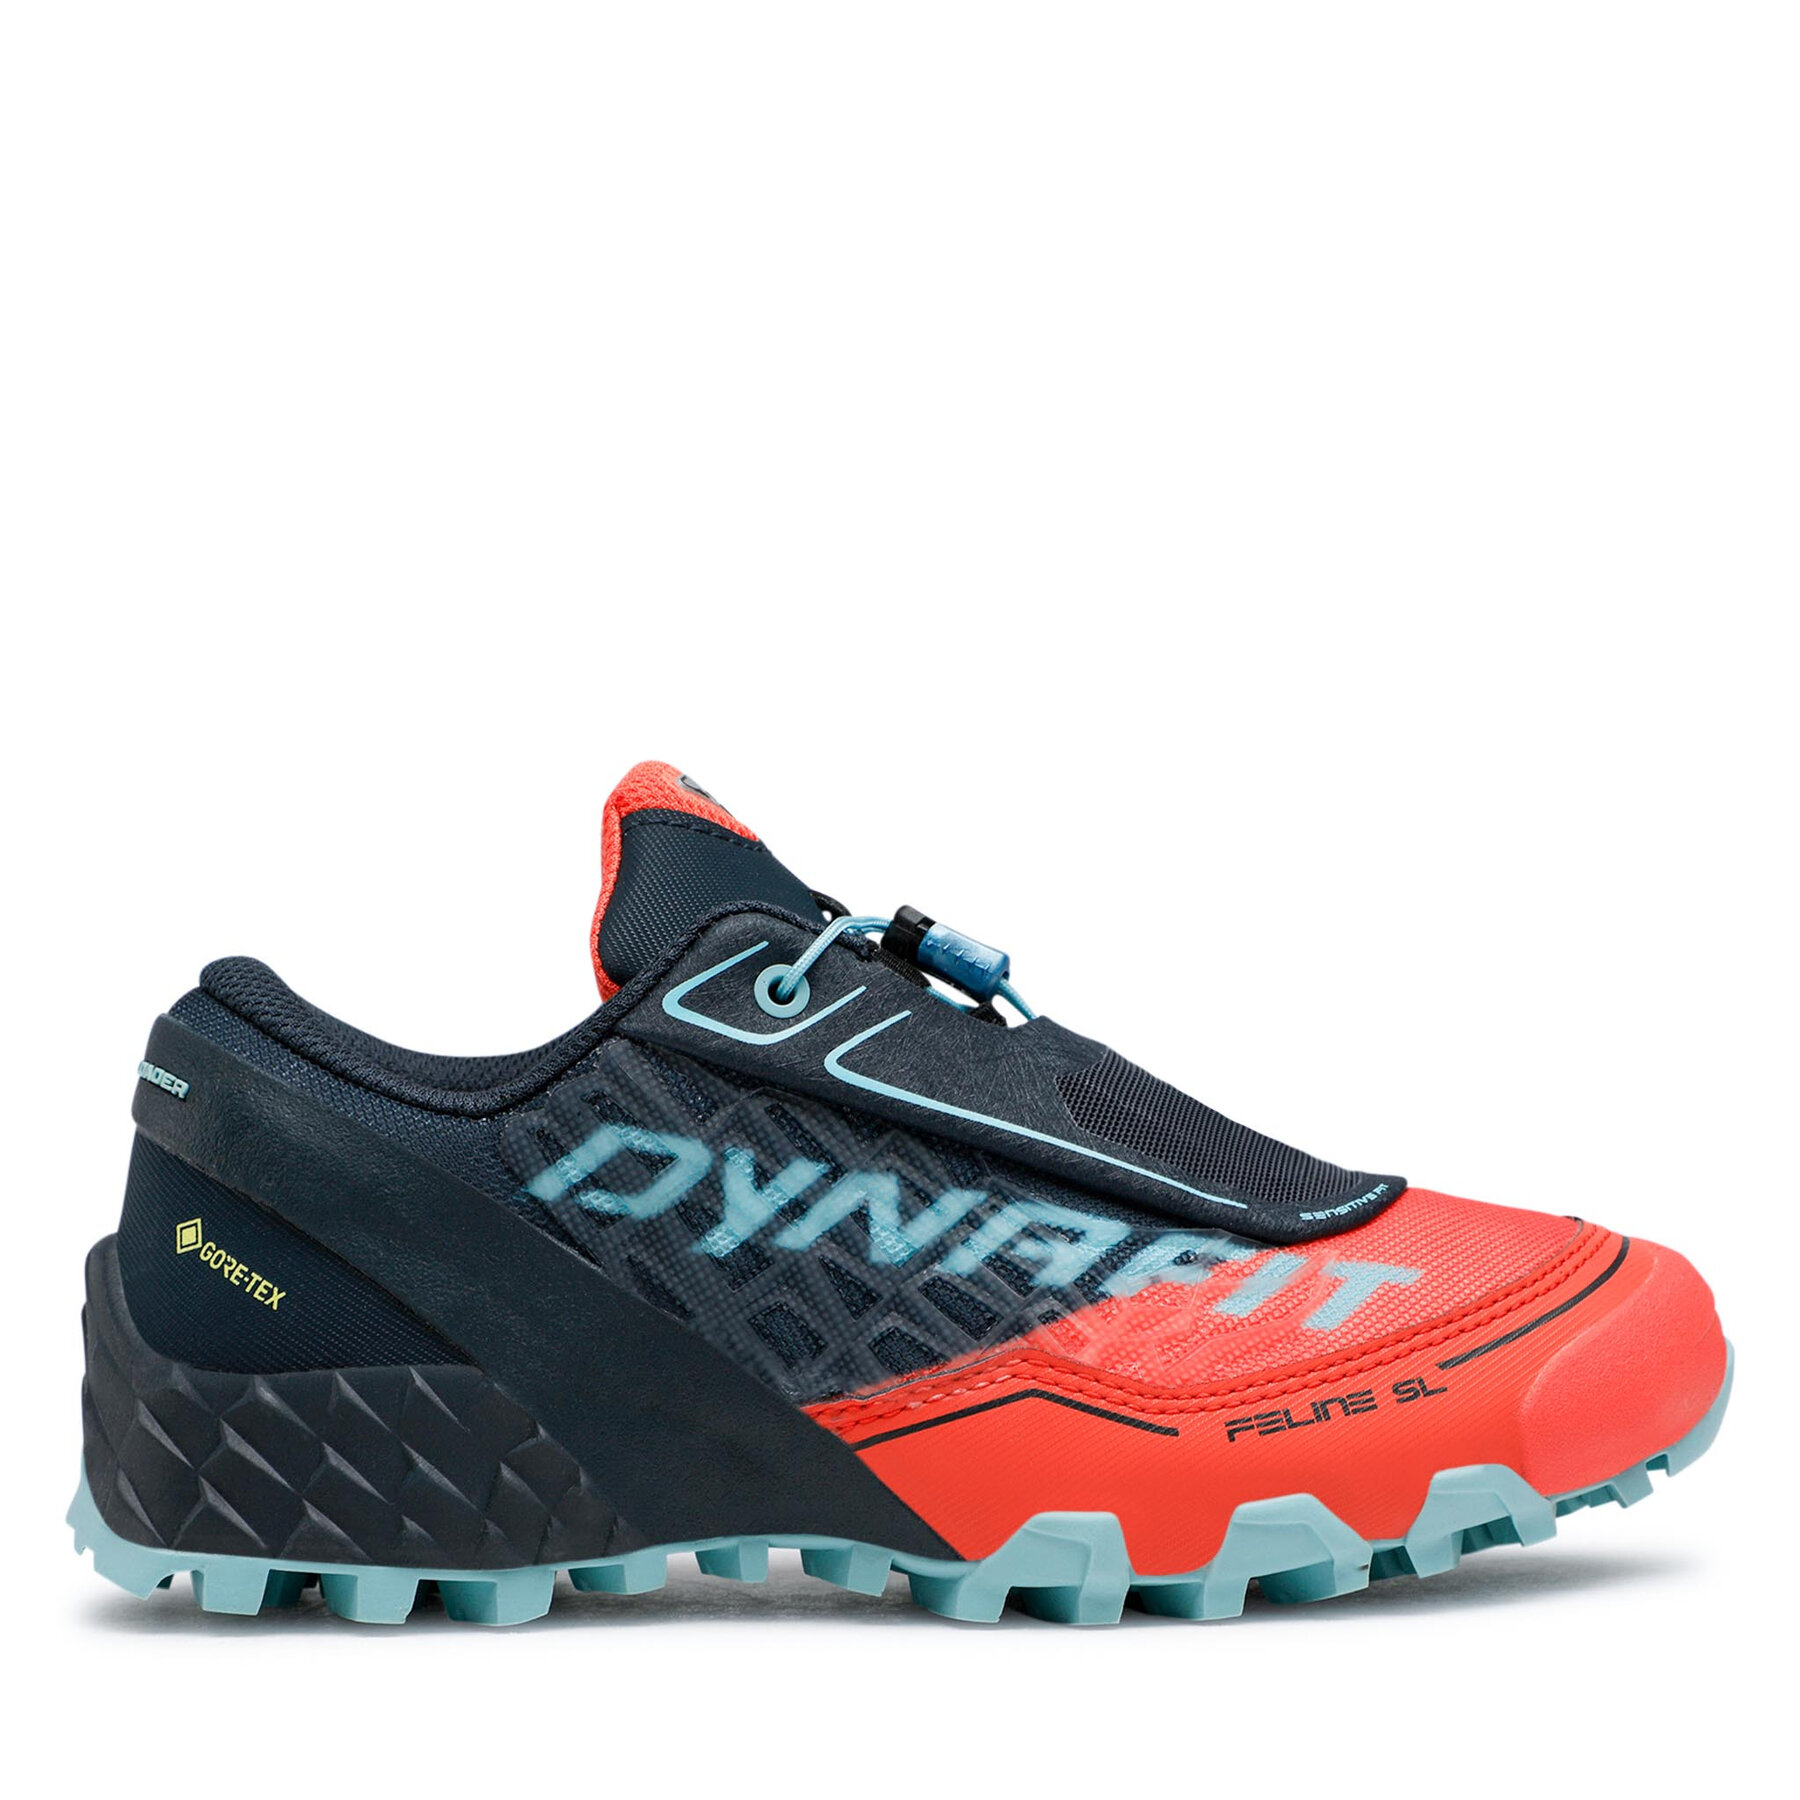 DYNAFIT FELINE SL GTX - Zapatos